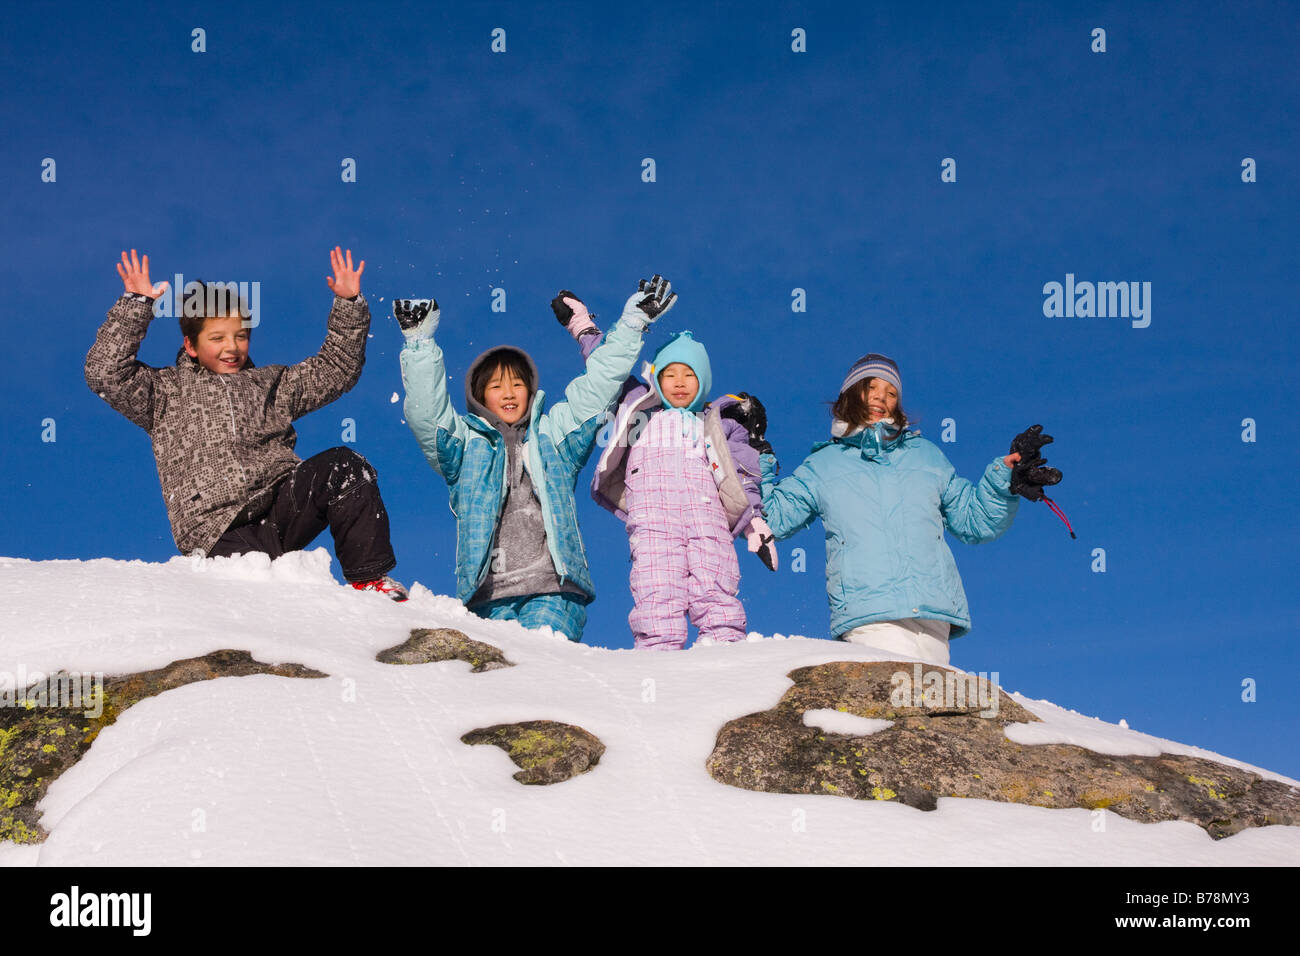 Quatre enfants se tenant sur le haut d'un rocher enneigé à Sierra à Tahoe ski resort, près du lac Tahoe en Californie Banque D'Images